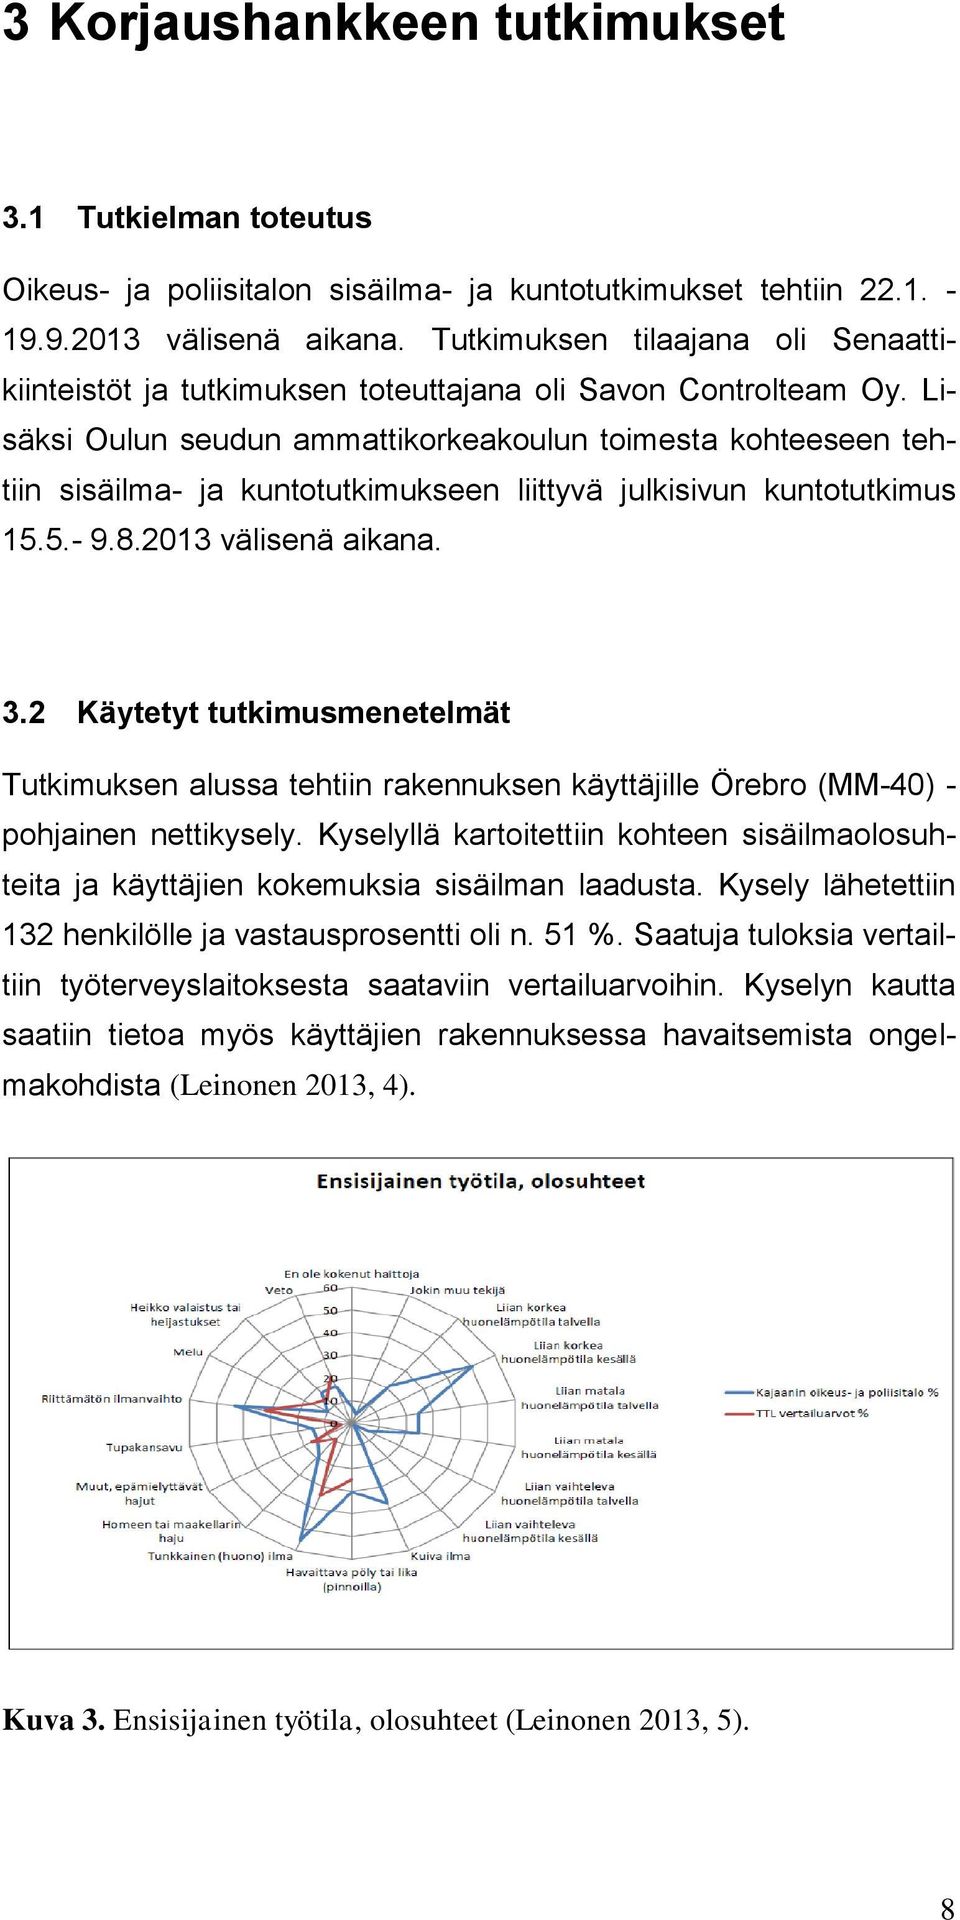 Lisäksi Oulun seudun ammattikorkeakoulun toimesta kohteeseen tehtiin sisäilma- ja kuntotutkimukseen liittyvä julkisivun kuntotutkimus 15.5.- 9.8.2013 välisenä aikana. 3.